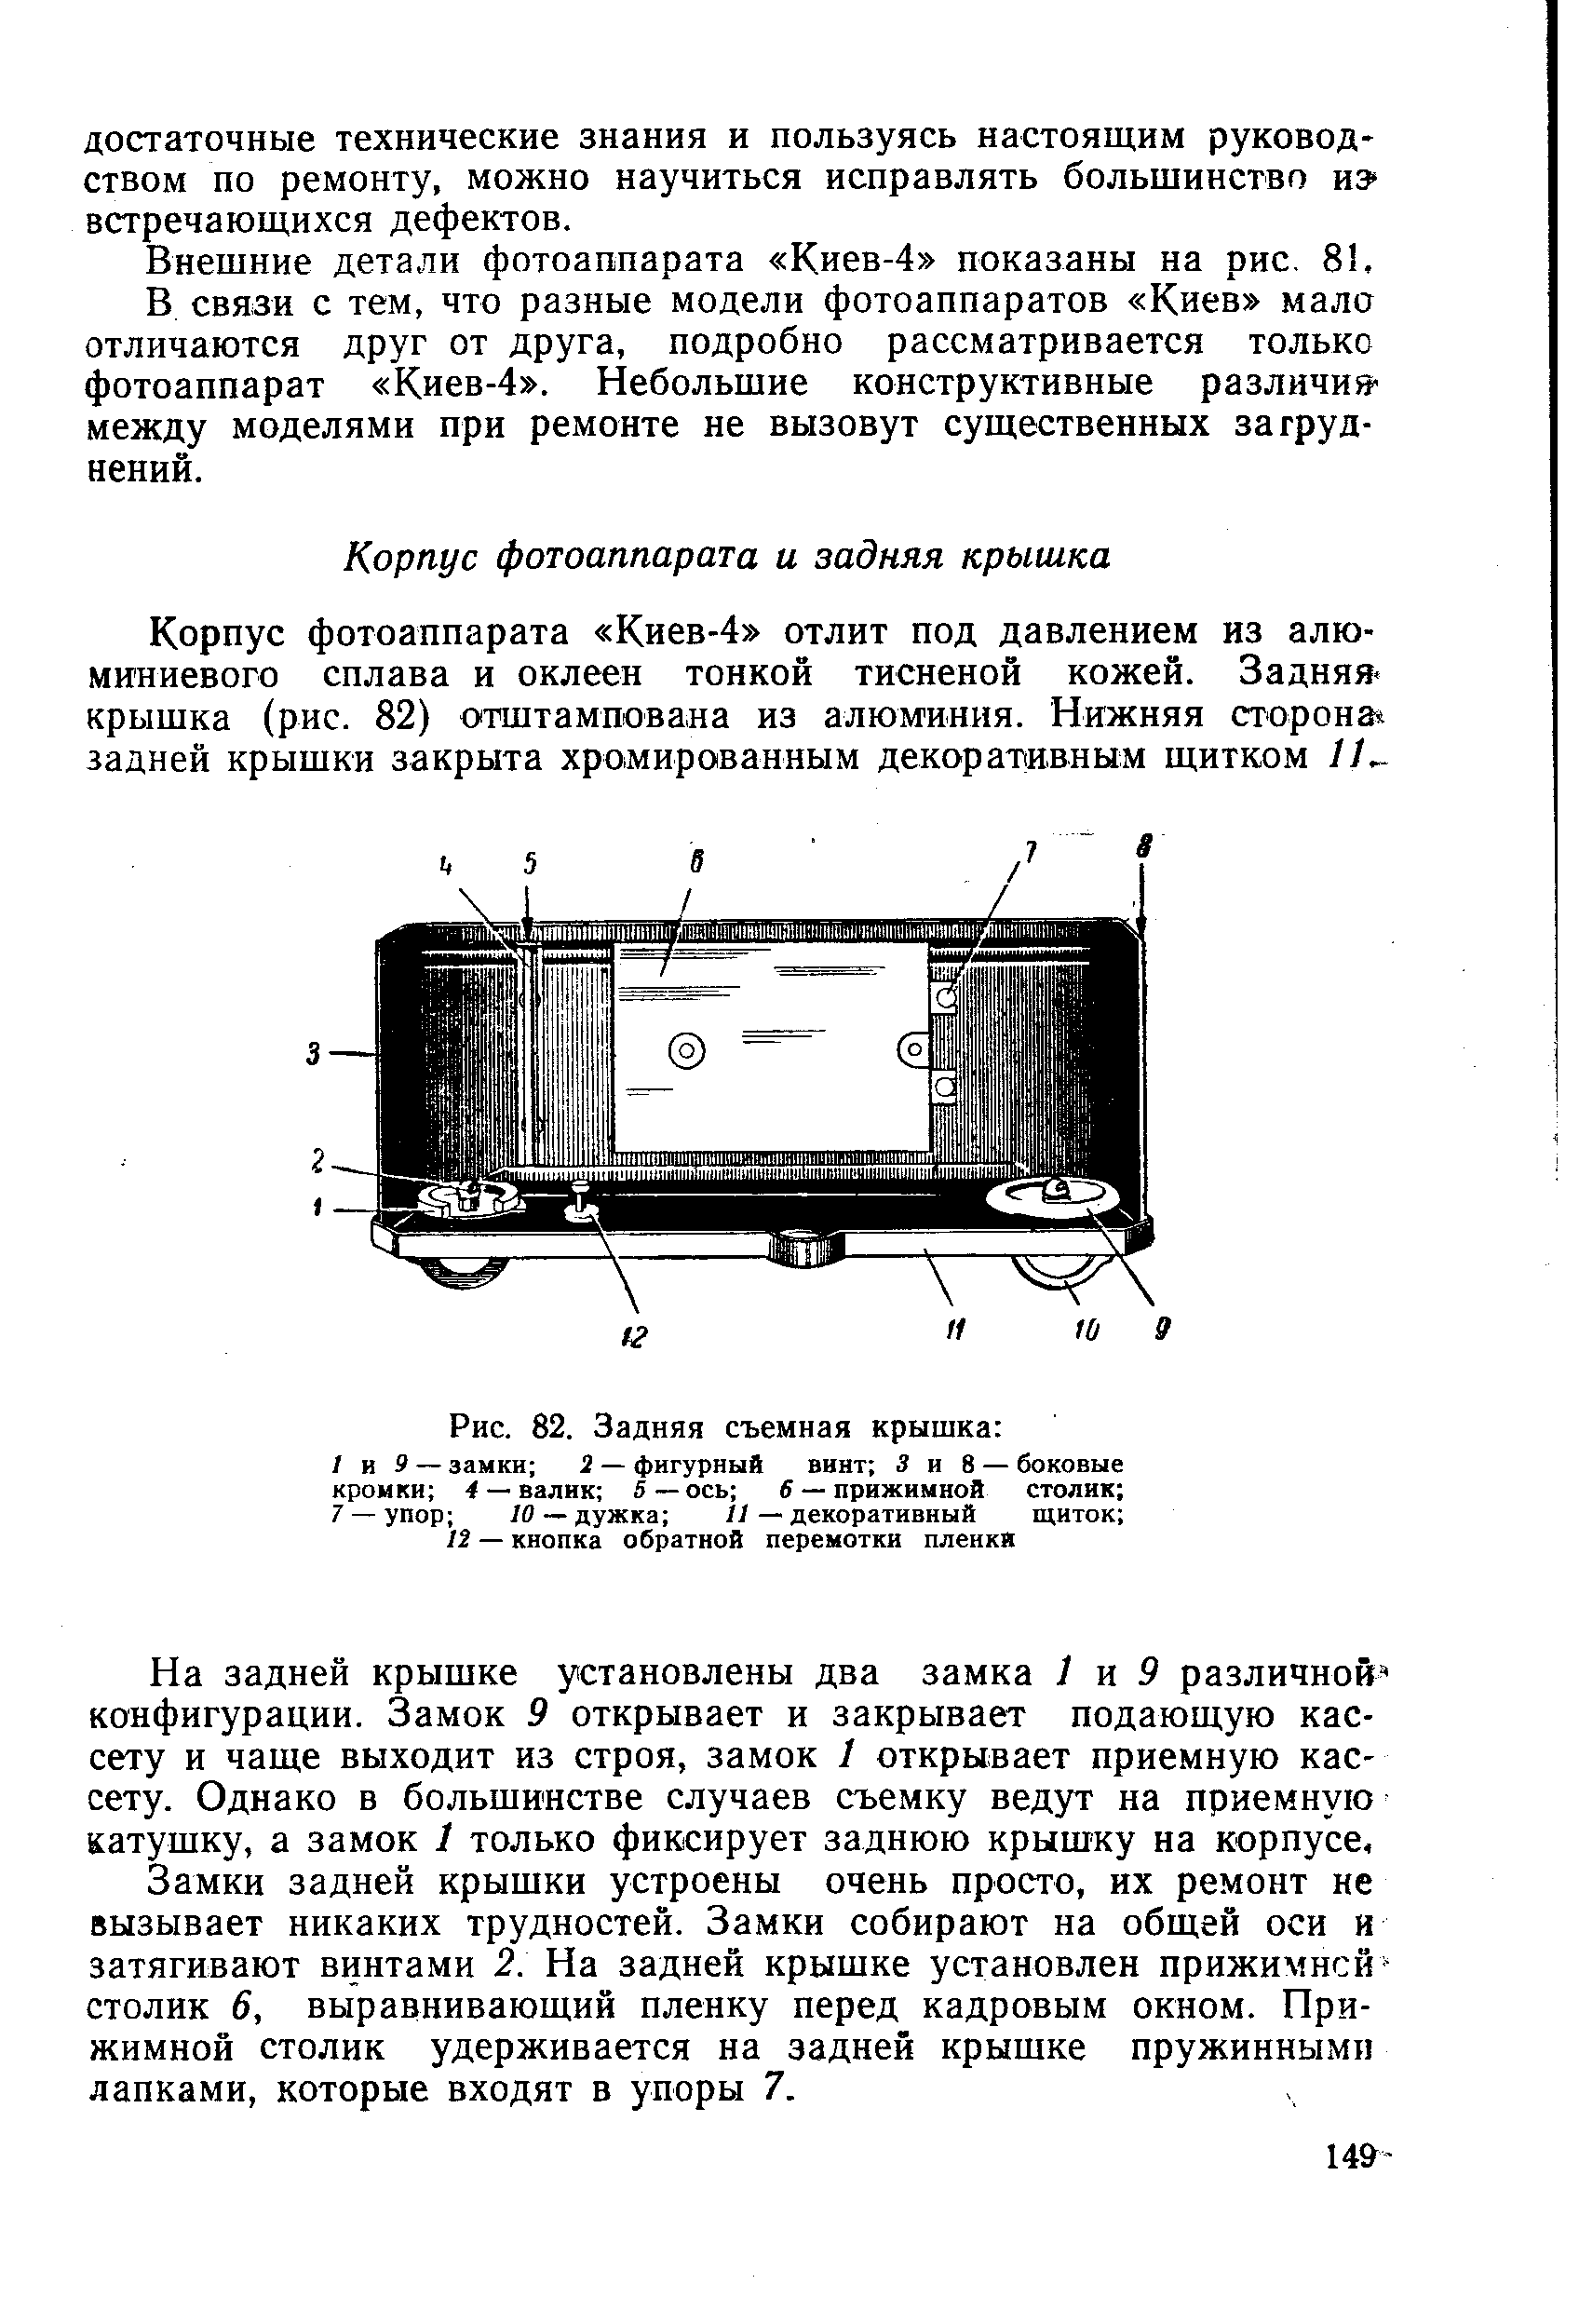 Внешние детали фотоаппарата Киев-4 показаны на рис. 8 .
